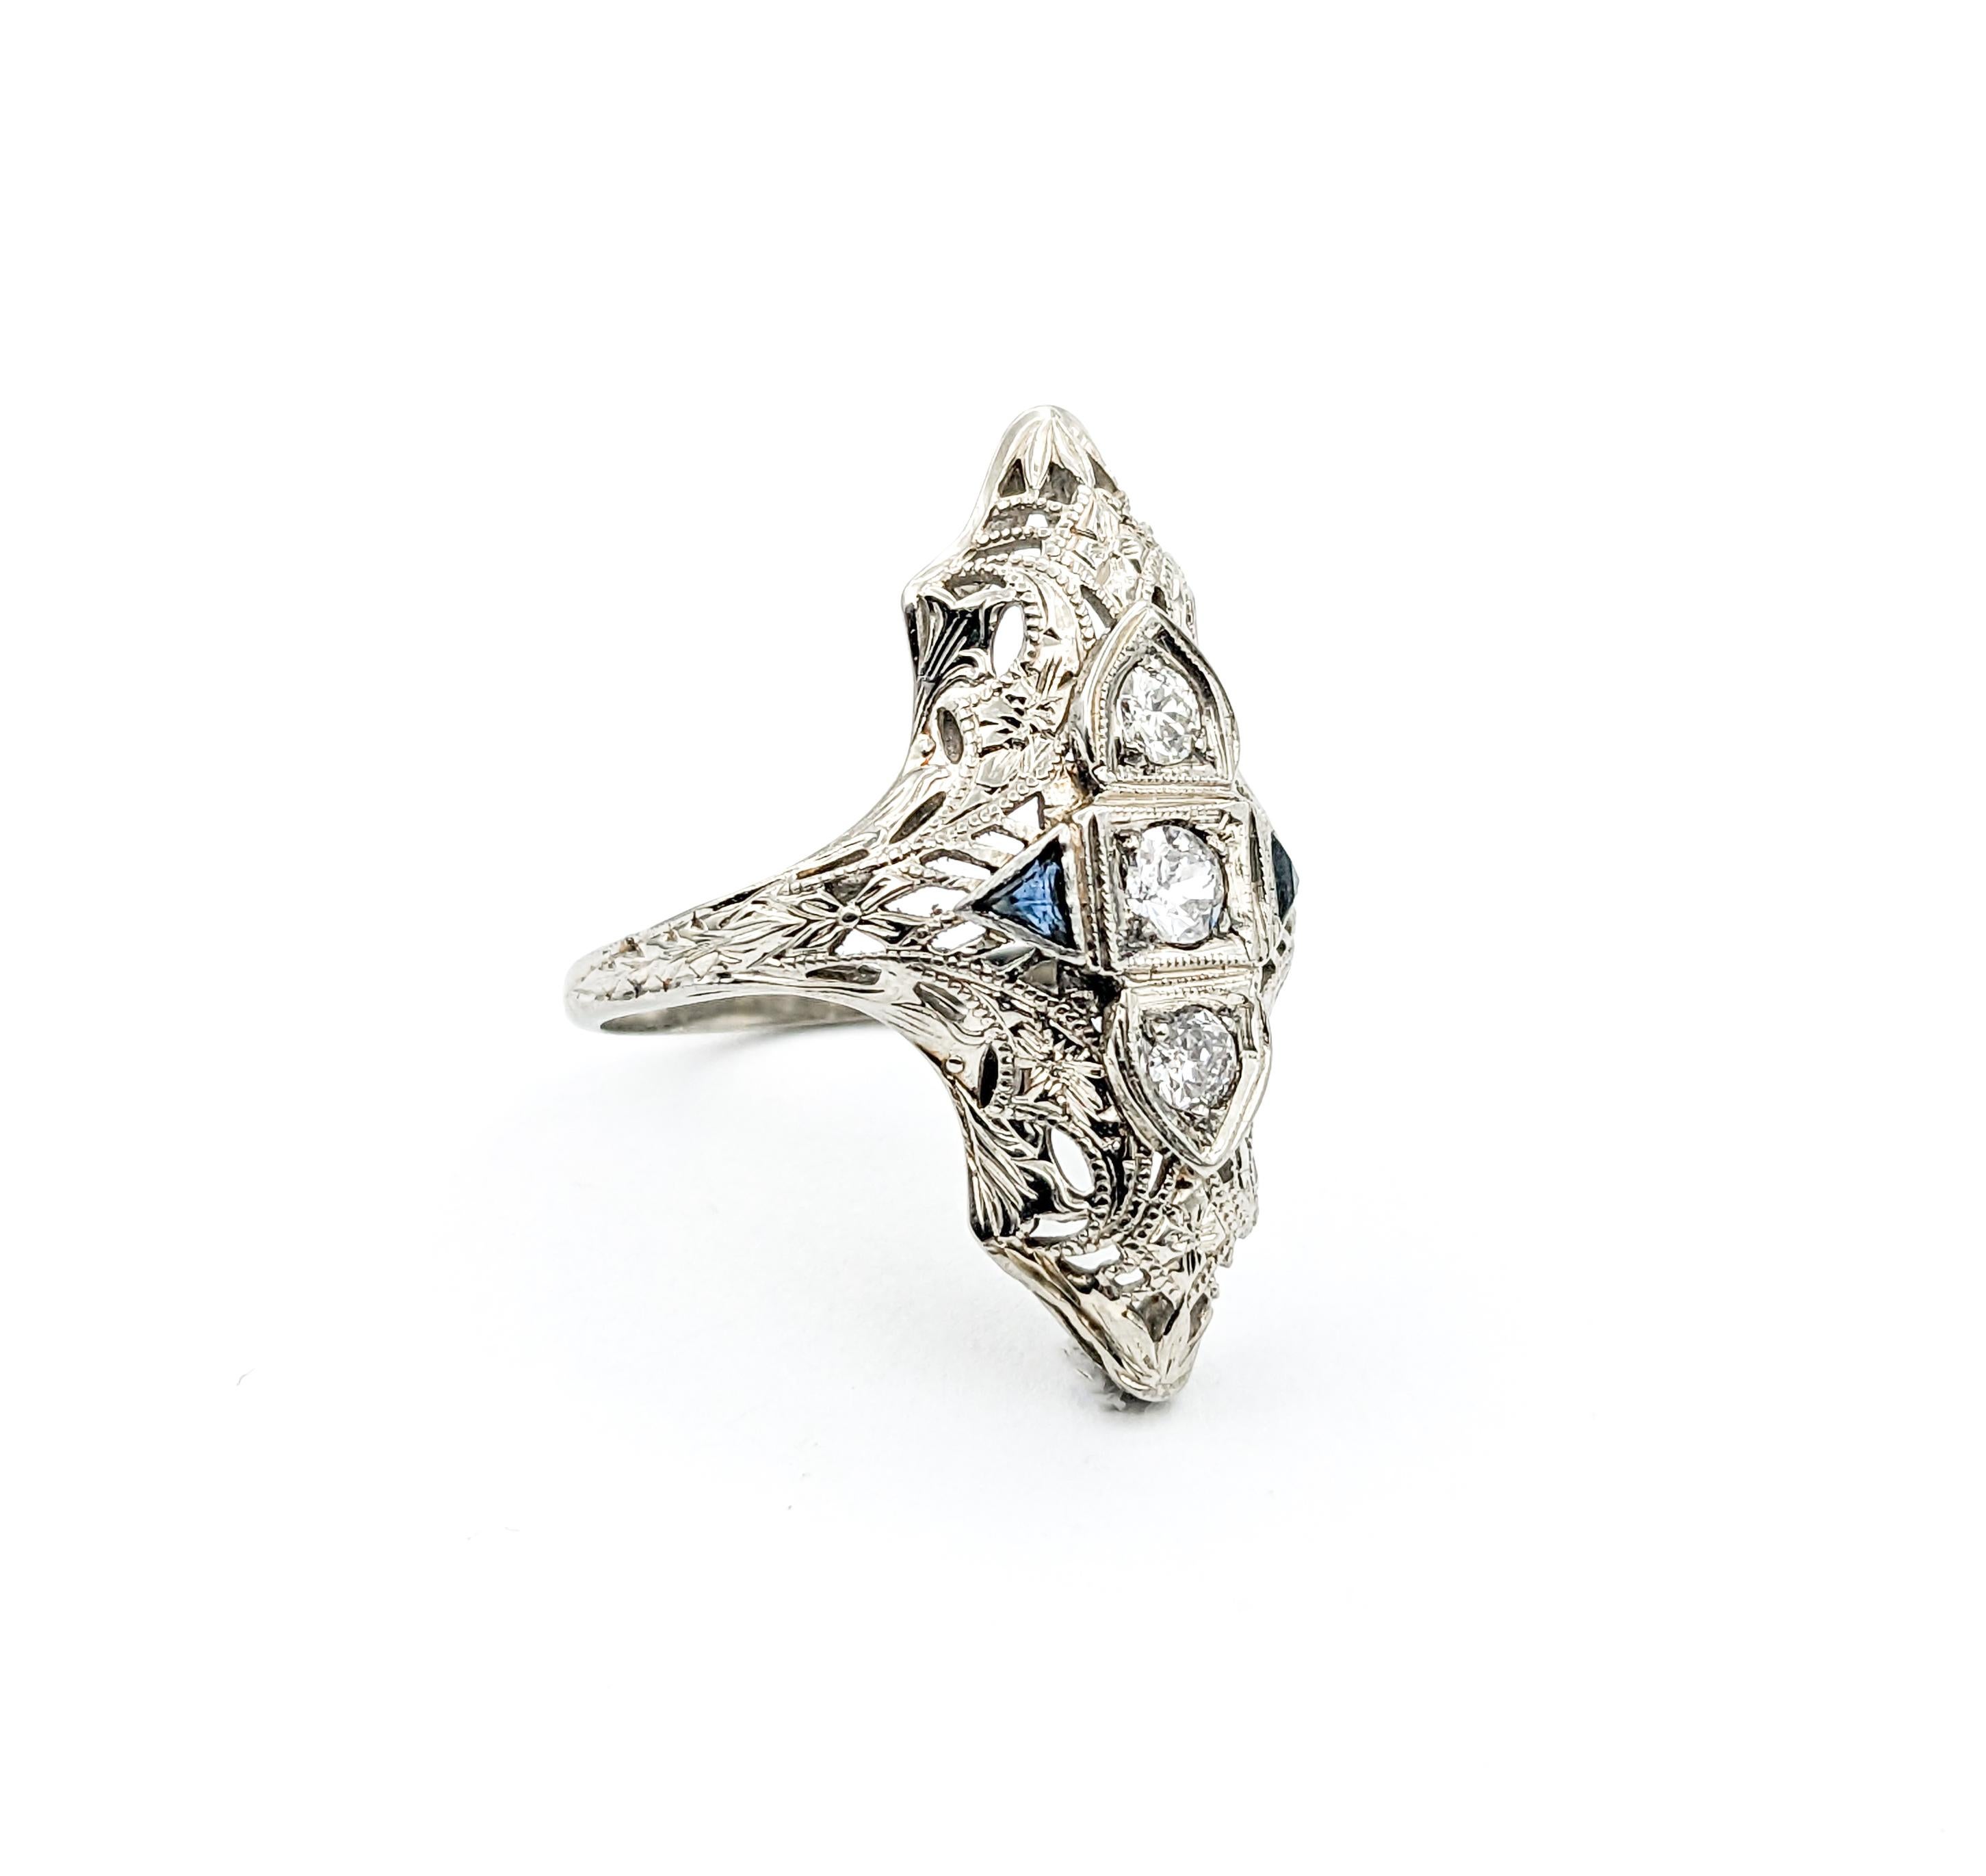 Antique Art Deco Era Diamond & Sapphire Shield Ring In White Gold For Sale 4